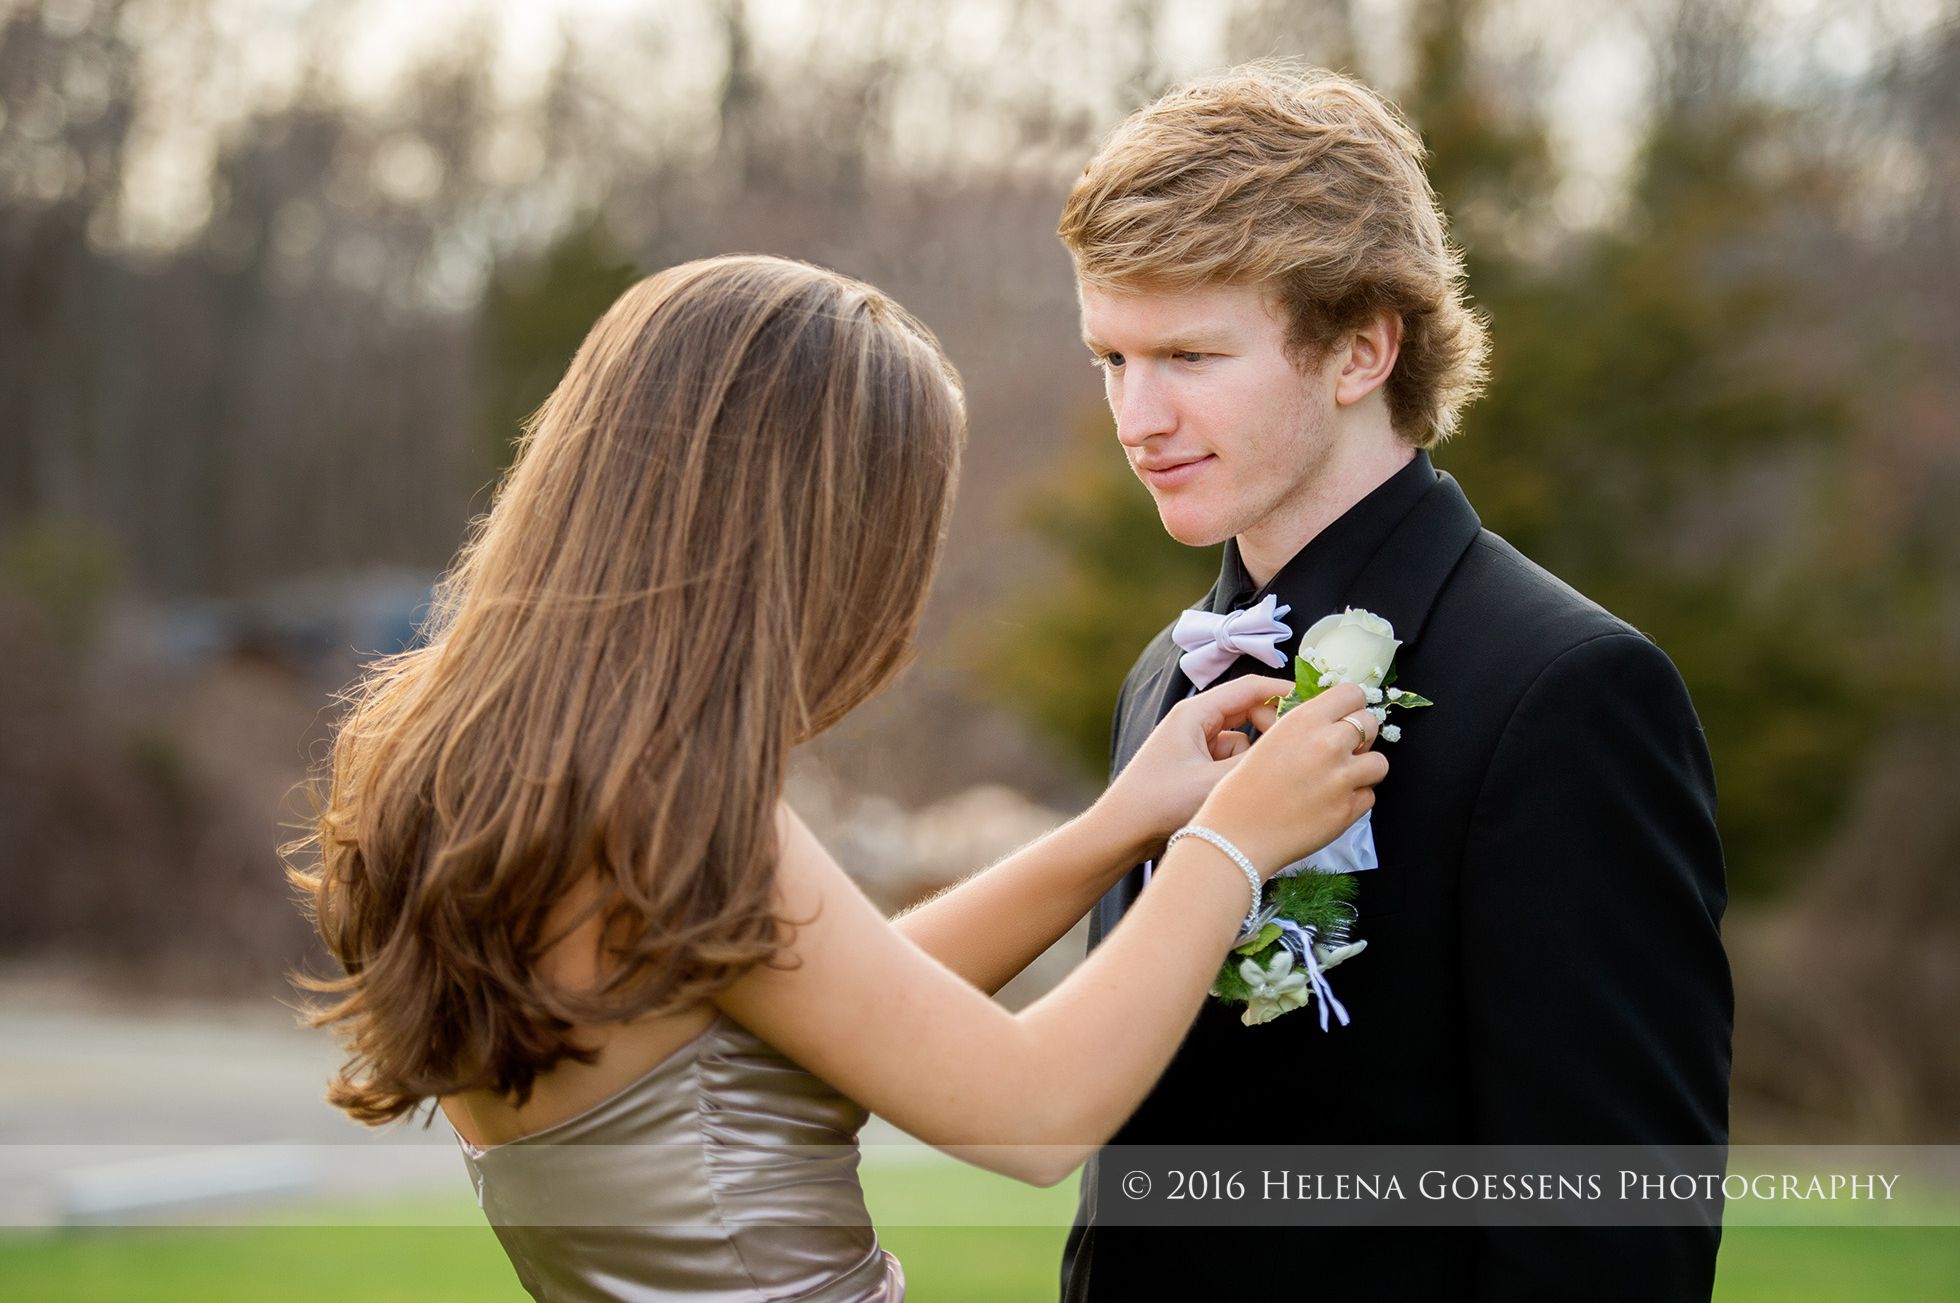 brunette log hair girl attaching a white rose in his tuxedo